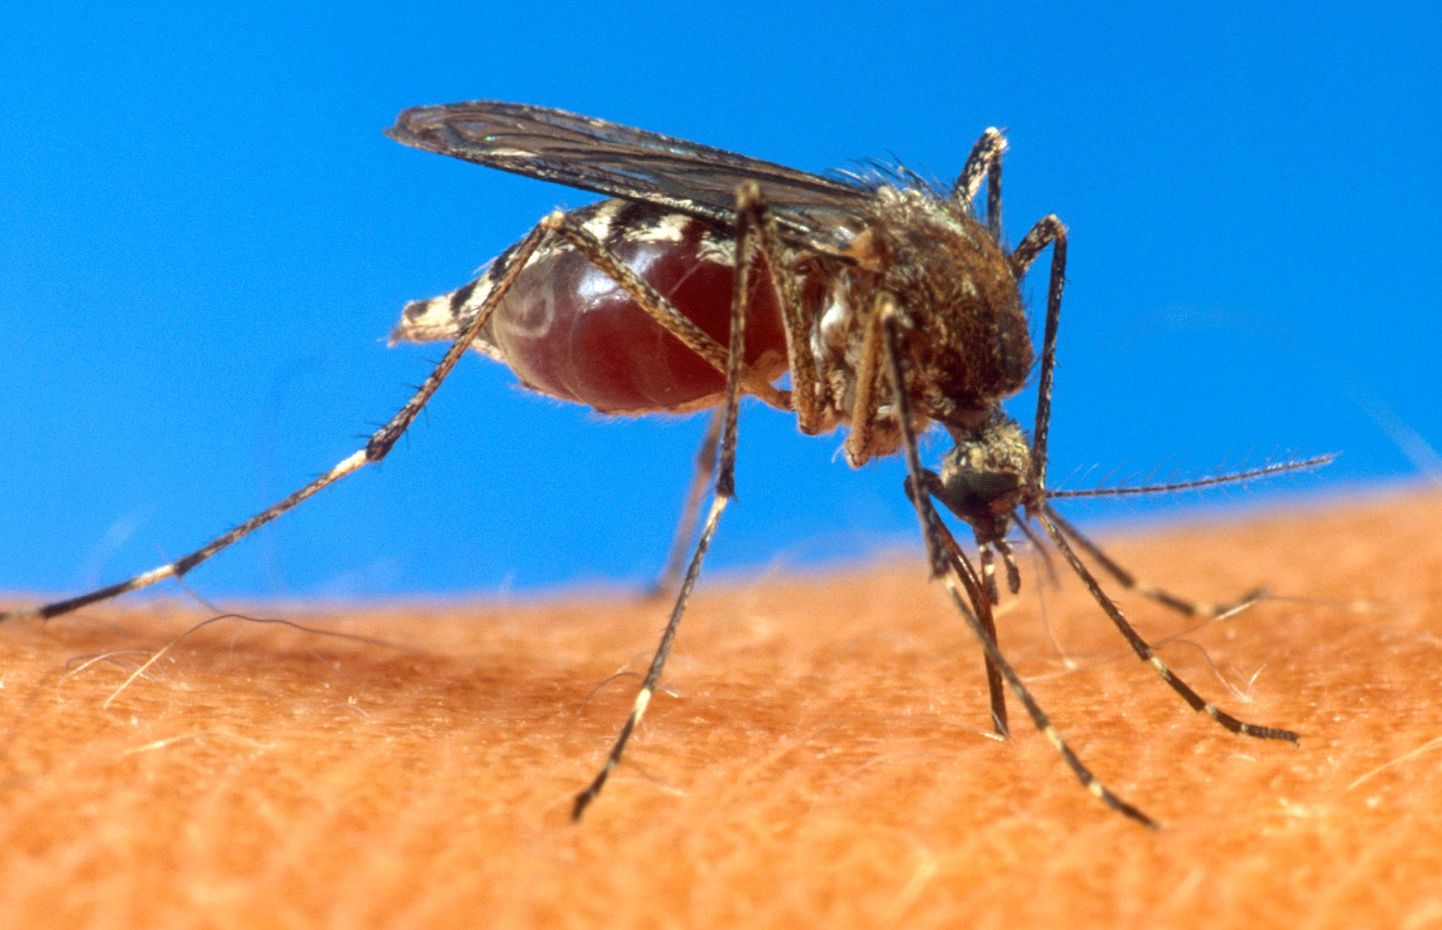 Malaariat põhjustab malaariaparasiit, kes satub inimese vereringesse sääse süljenäärmetest.